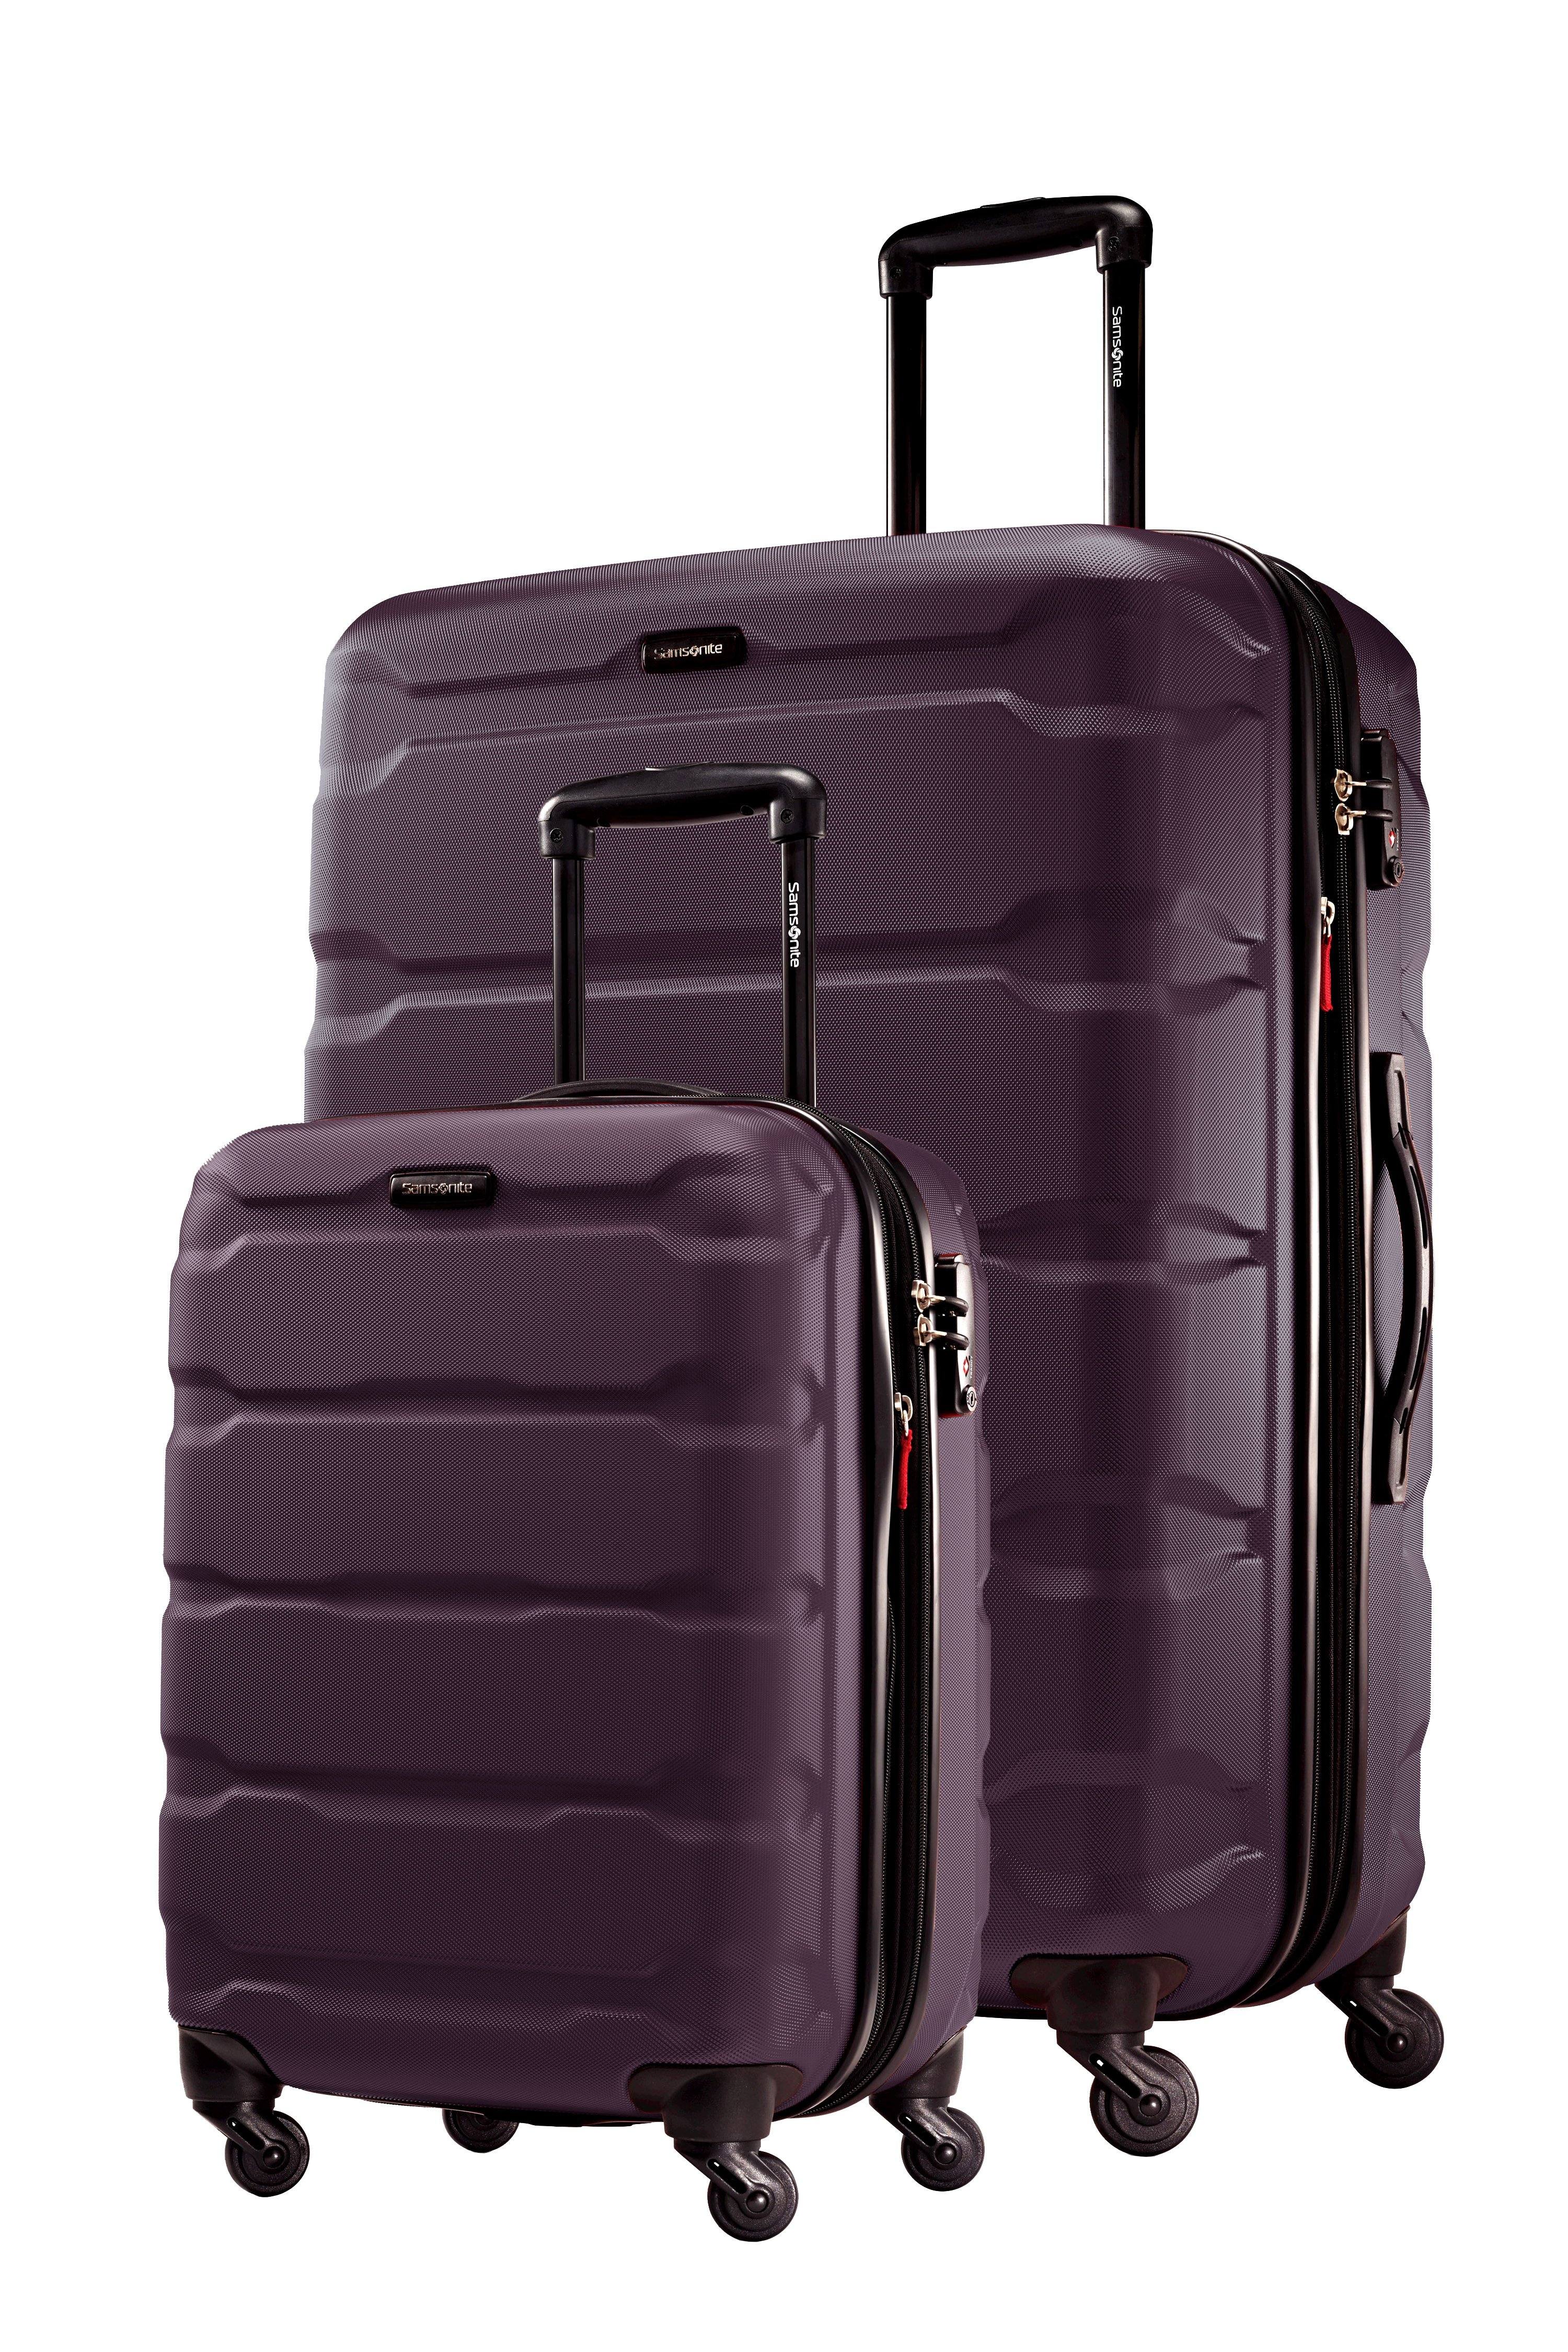 Samsonite Omni PC 2 Piece Set (20/28) Hardshell 4-Wheel Luggage Sets –  Luggage Online